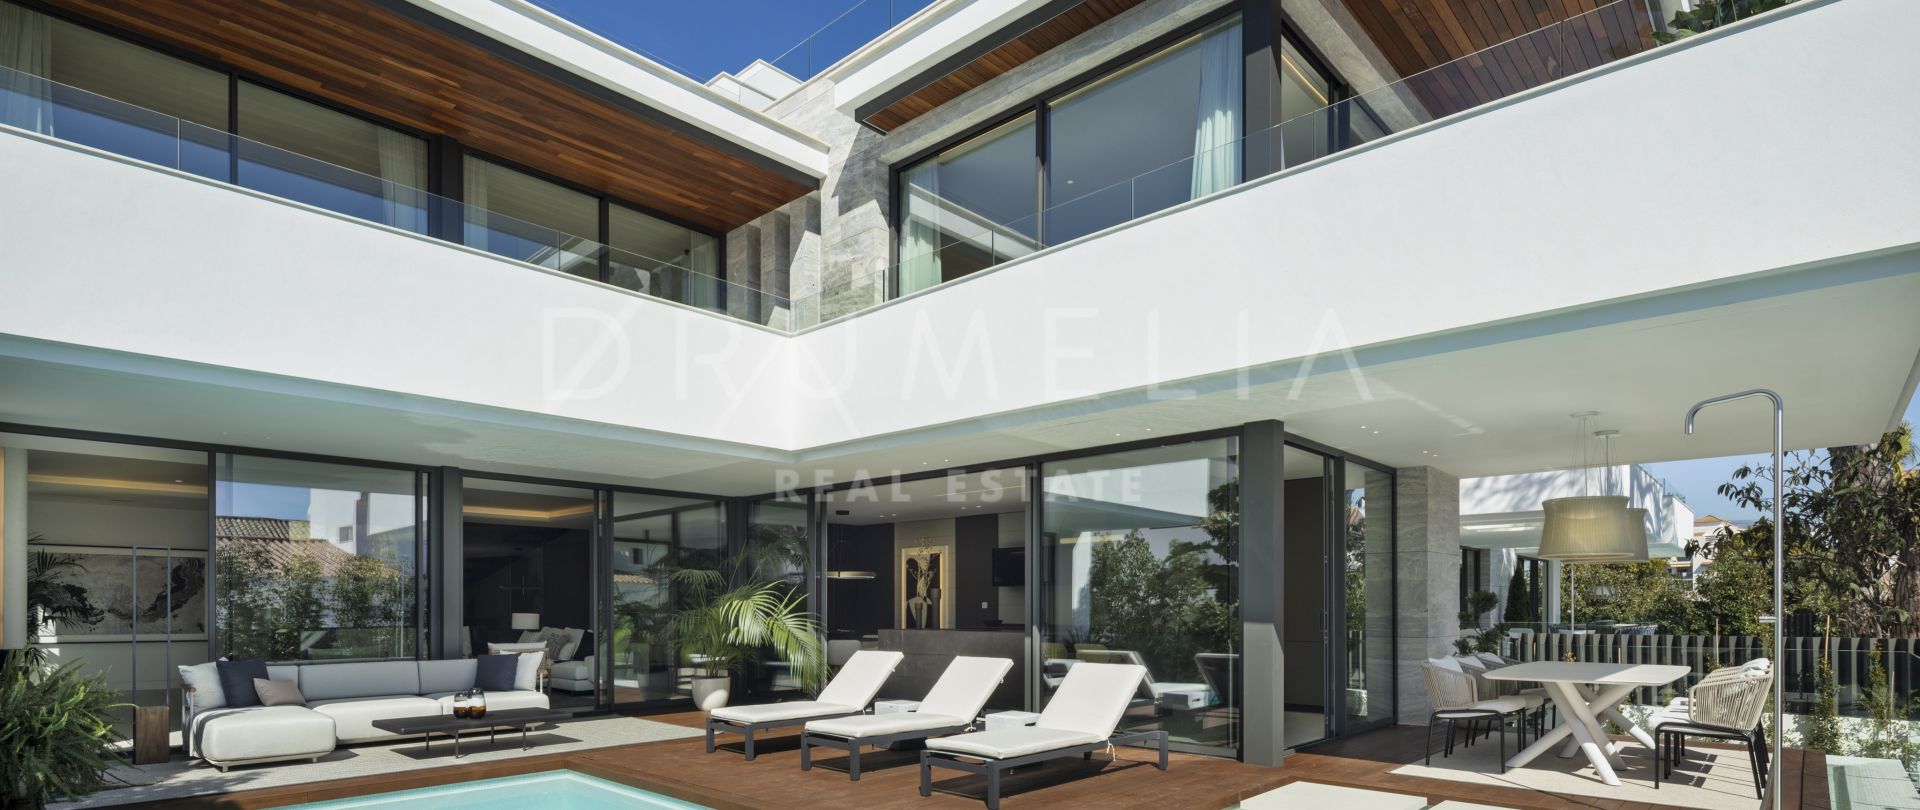 Luxuriöse, neu gebaute Villa am Strand mit moderner Architektur, in San Pedro, Marbella